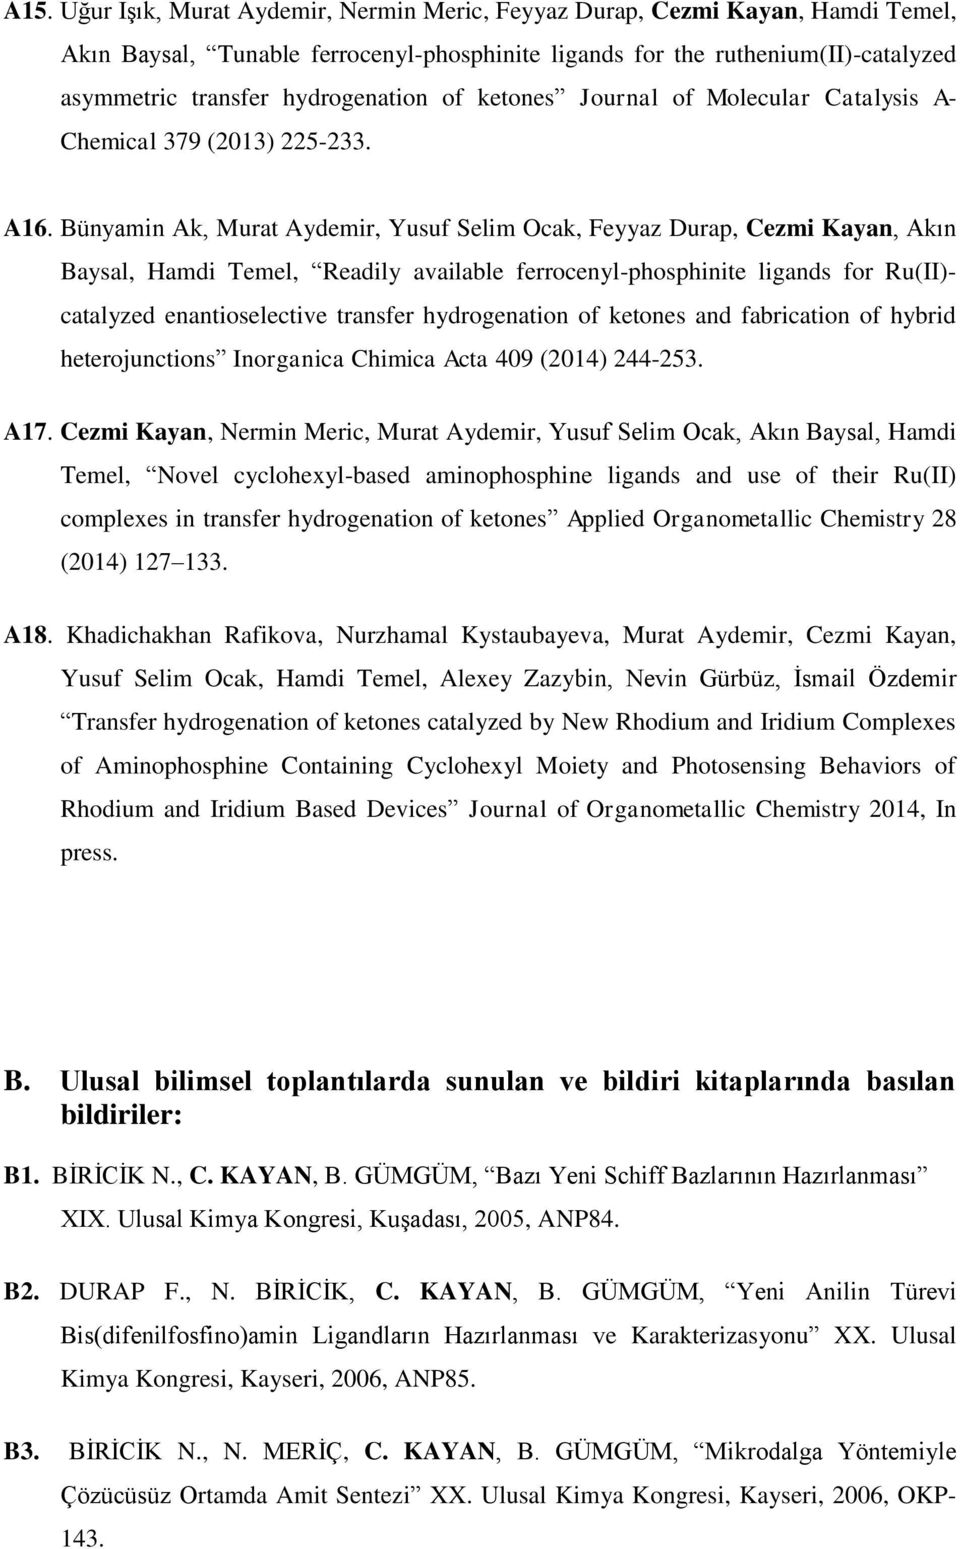 Bünyamin Ak, Murat Aydemir, Yusuf Selim Ocak, Feyyaz Durap, Cezmi Kayan, Akın Baysal, Hamdi Temel, Readily available ferrocenyl-phosphinite ligands for Ru(II)- catalyzed enantioselective transfer